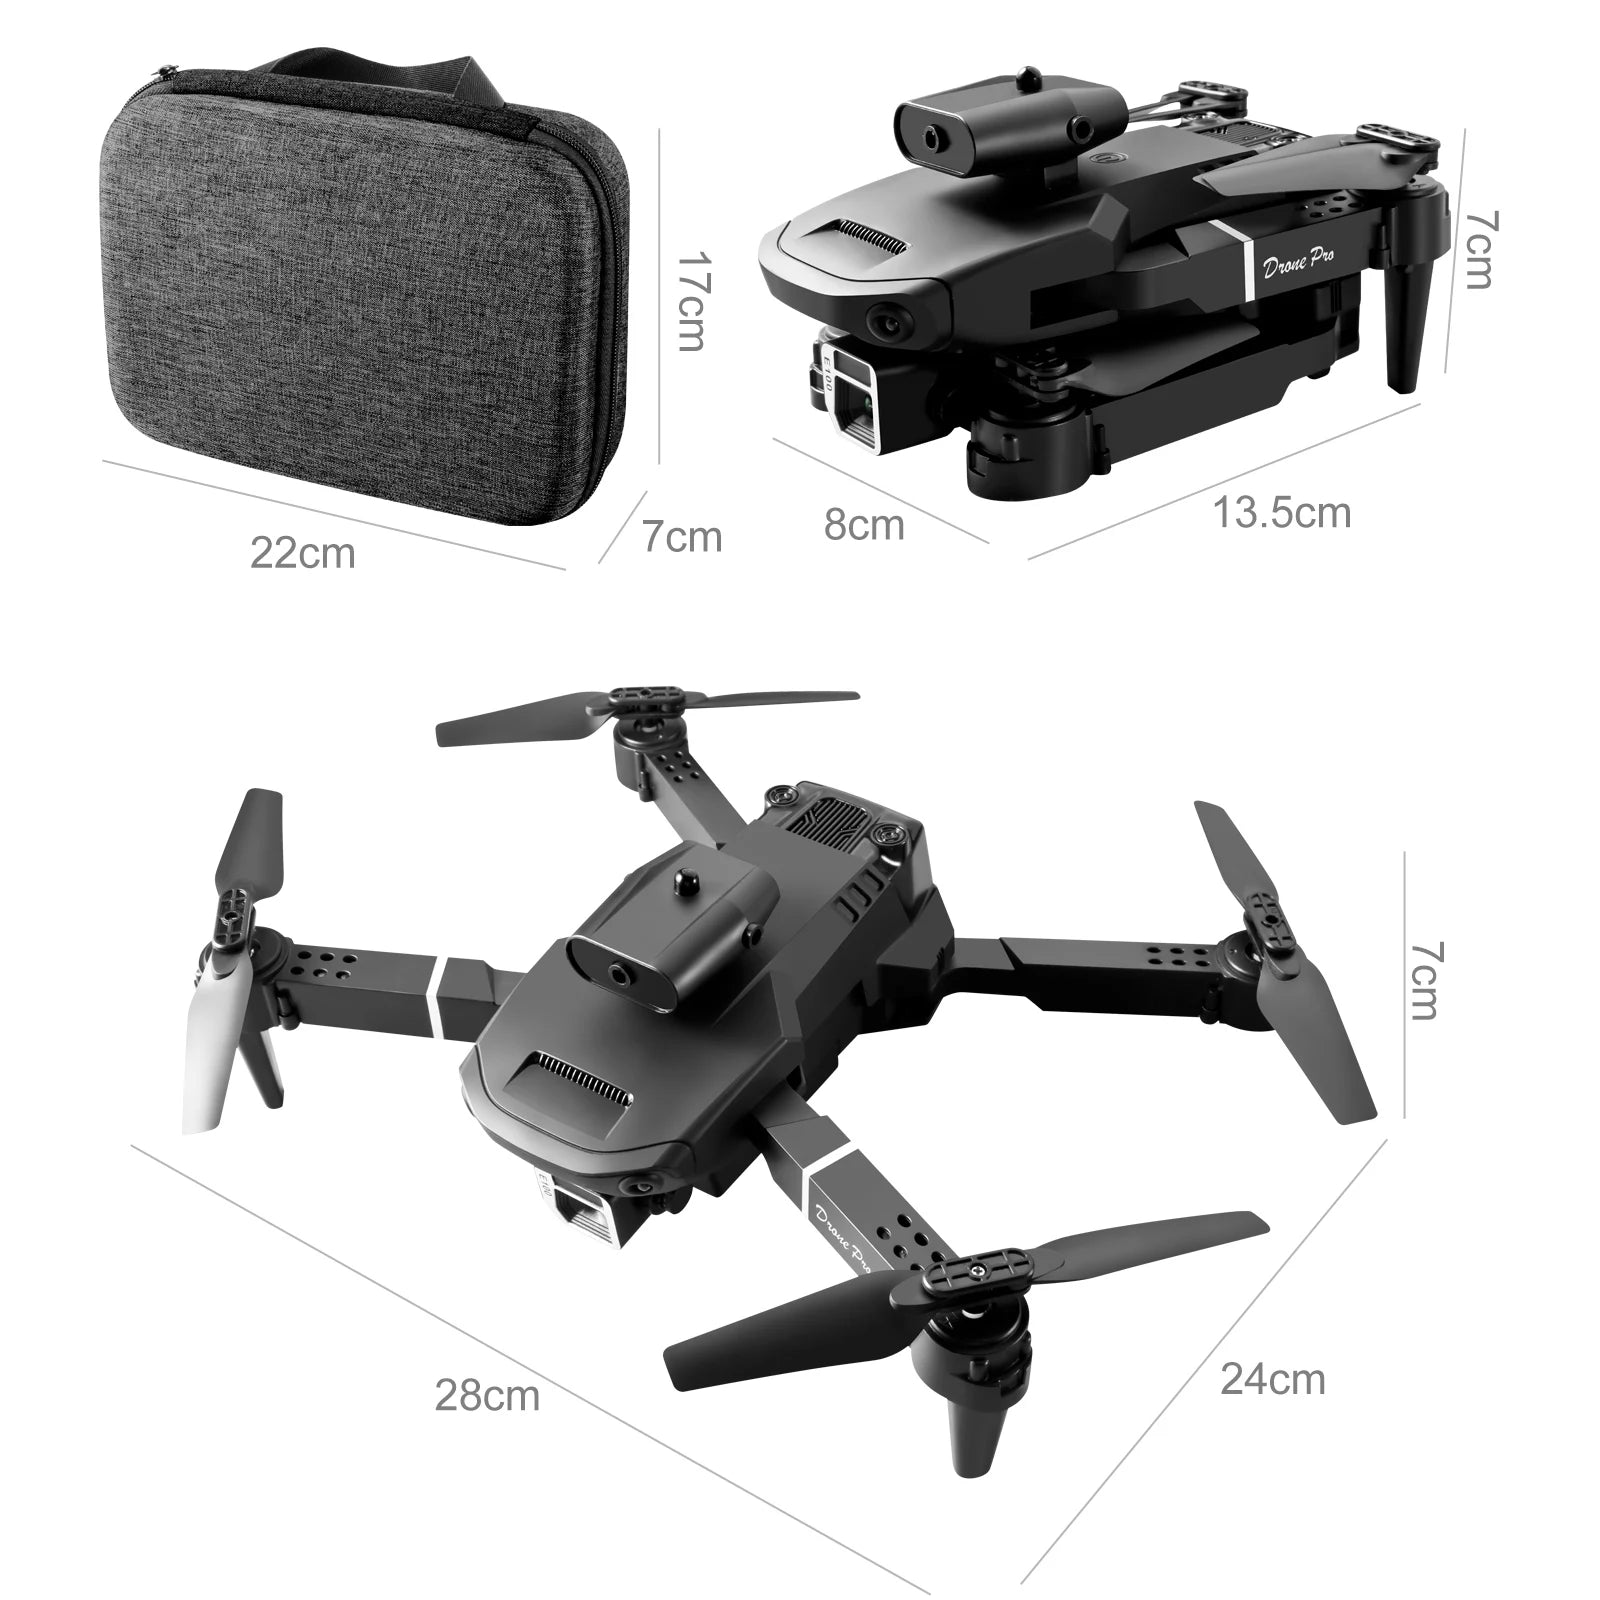 kbdfa e100 mini drone comes with 